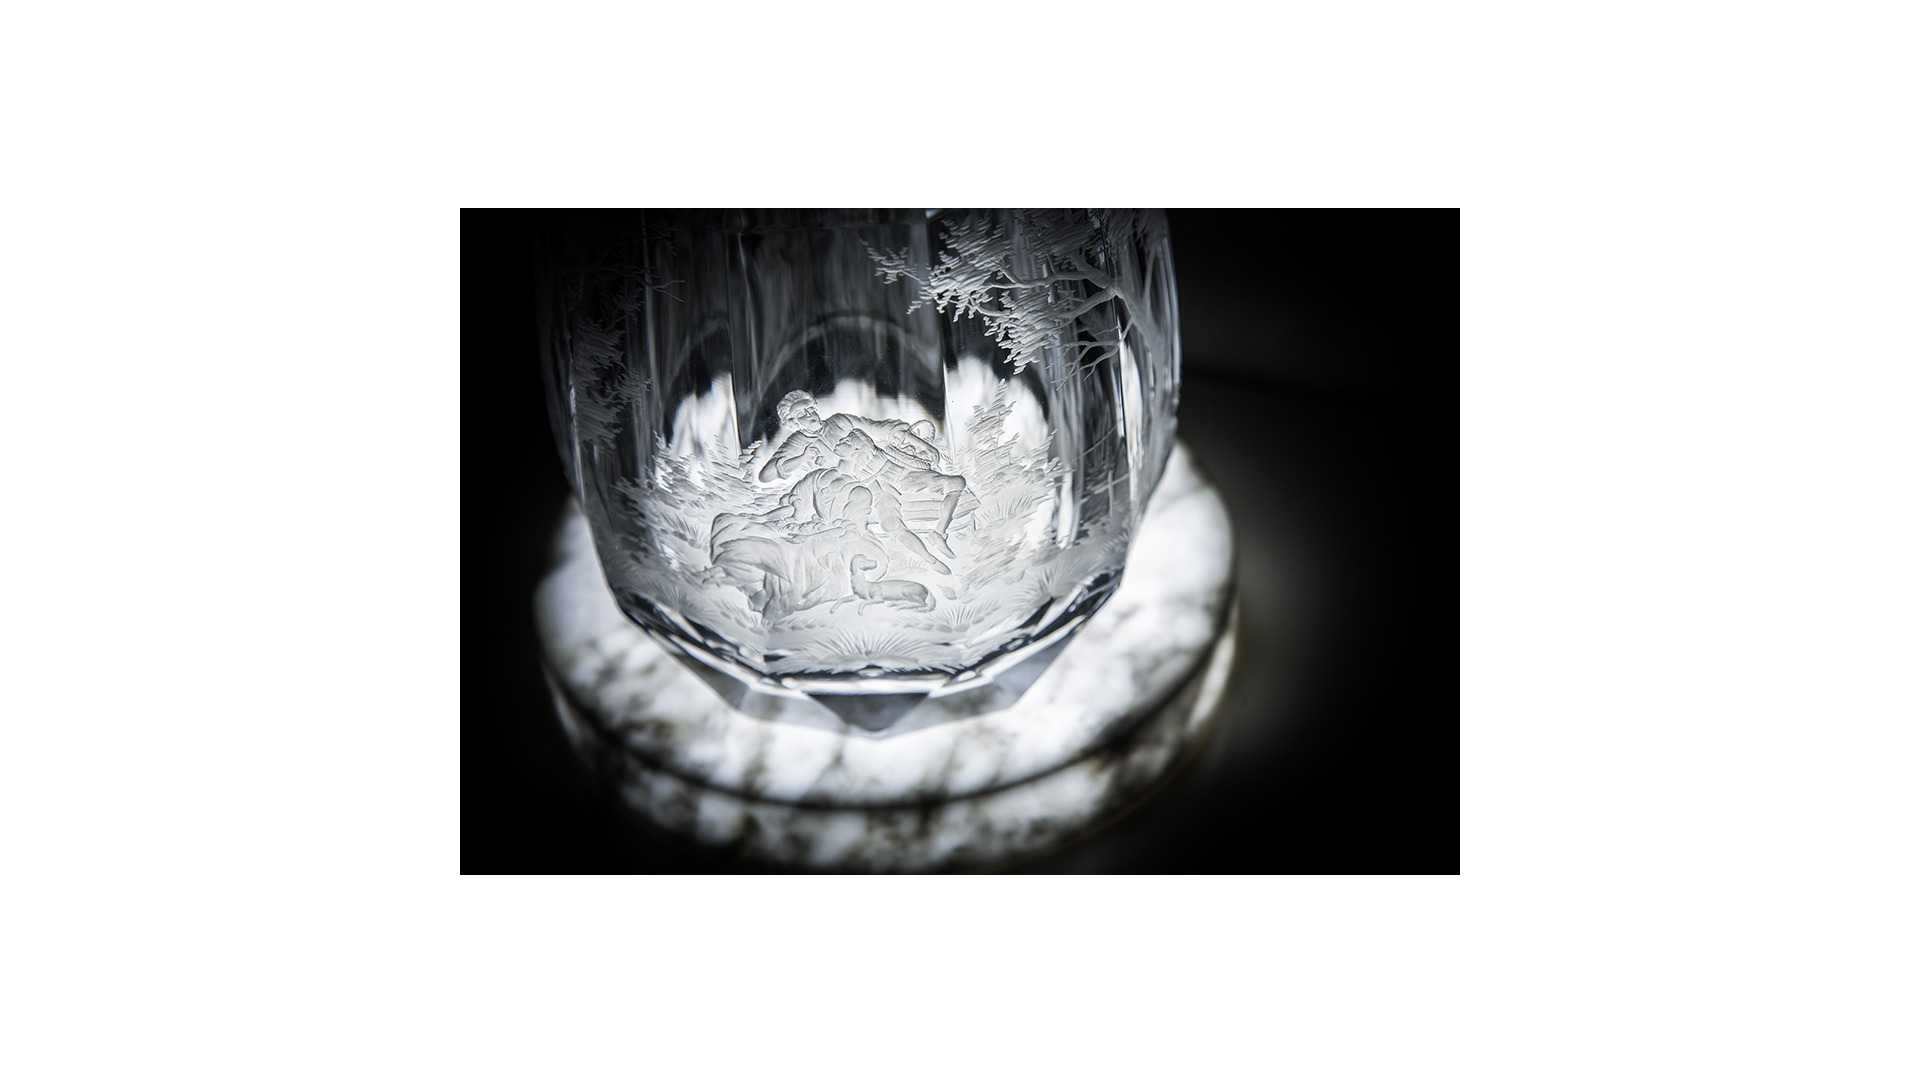 Пьедестал с ночным освещением Artishock Мраморный свет Bianco Carrara 19 см-sale